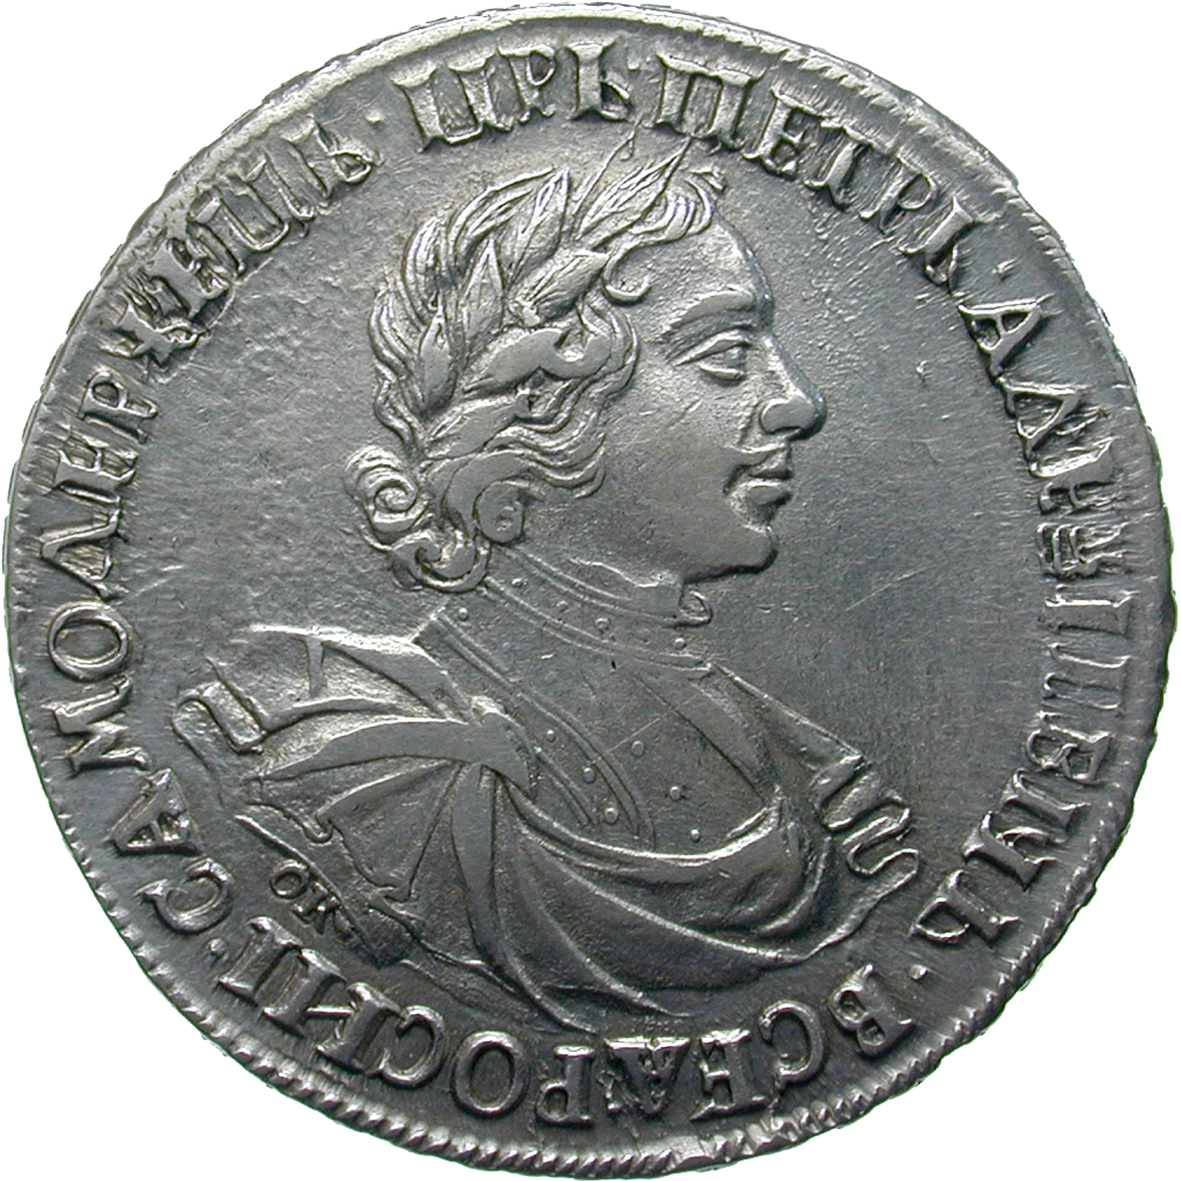 Zarenreich Russland, Peter I. der Grosse, Rubel 1719 (obverse)